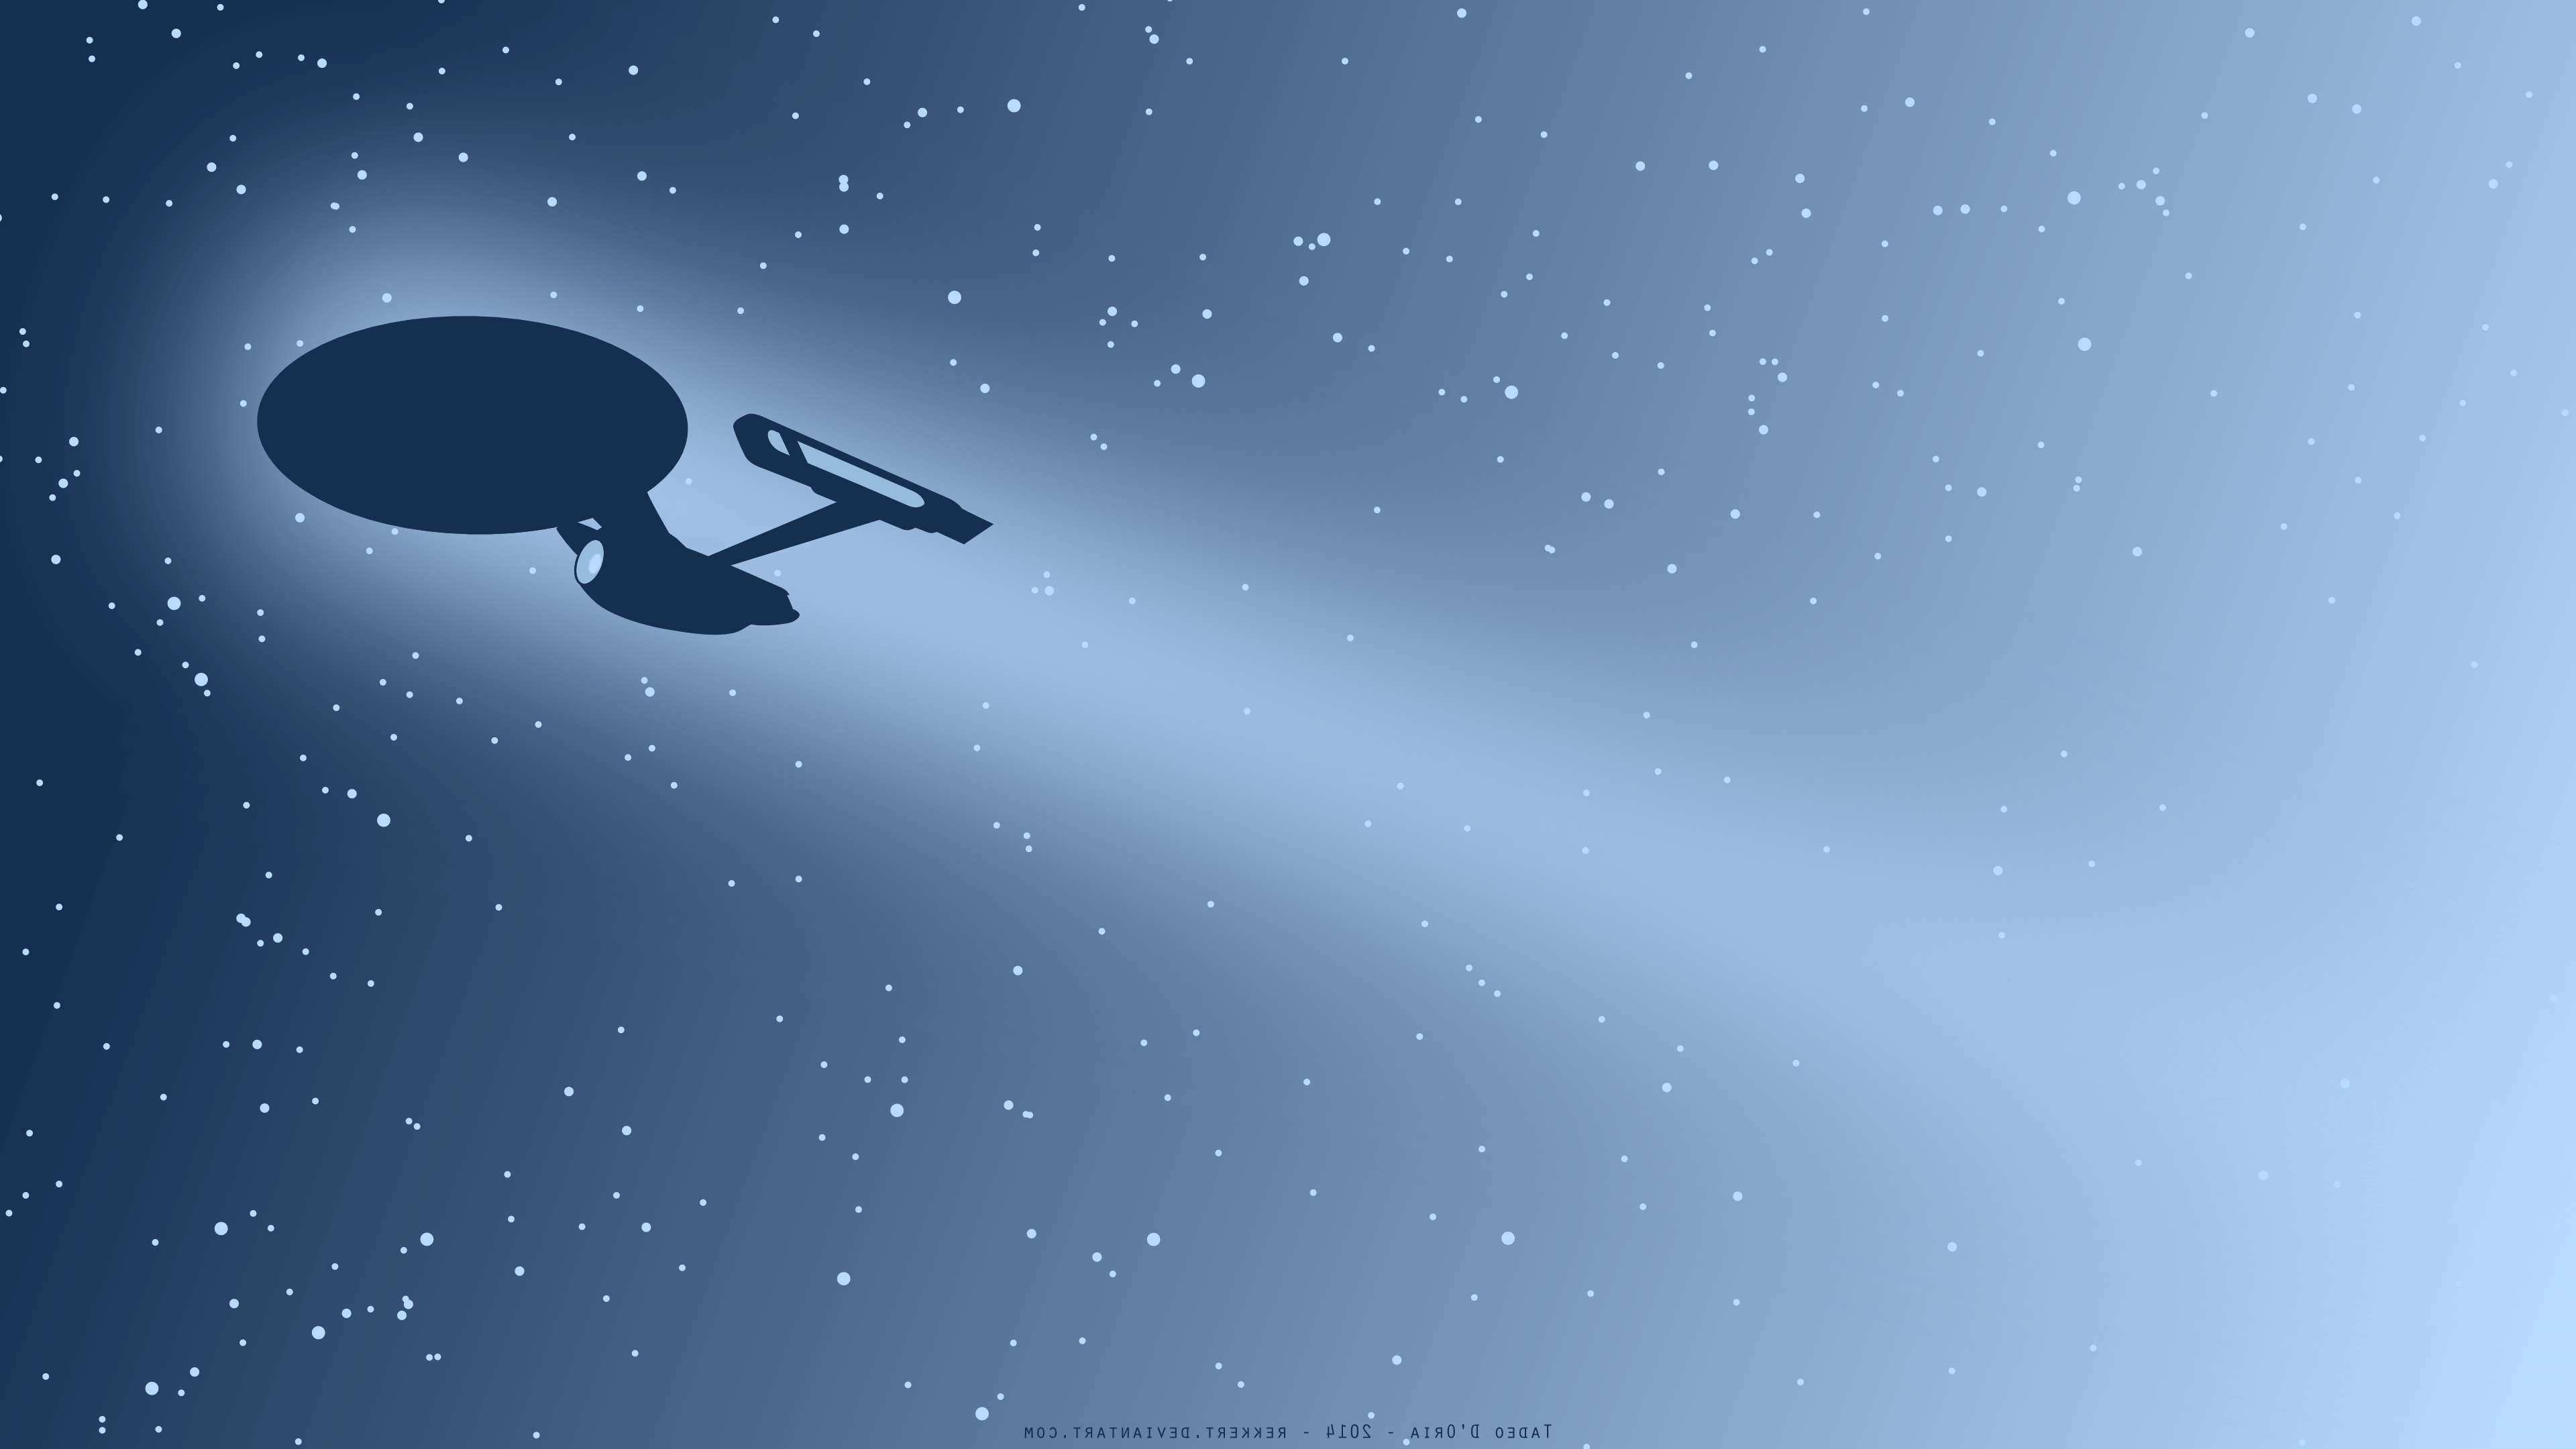 Star Trek, USS Enterprise